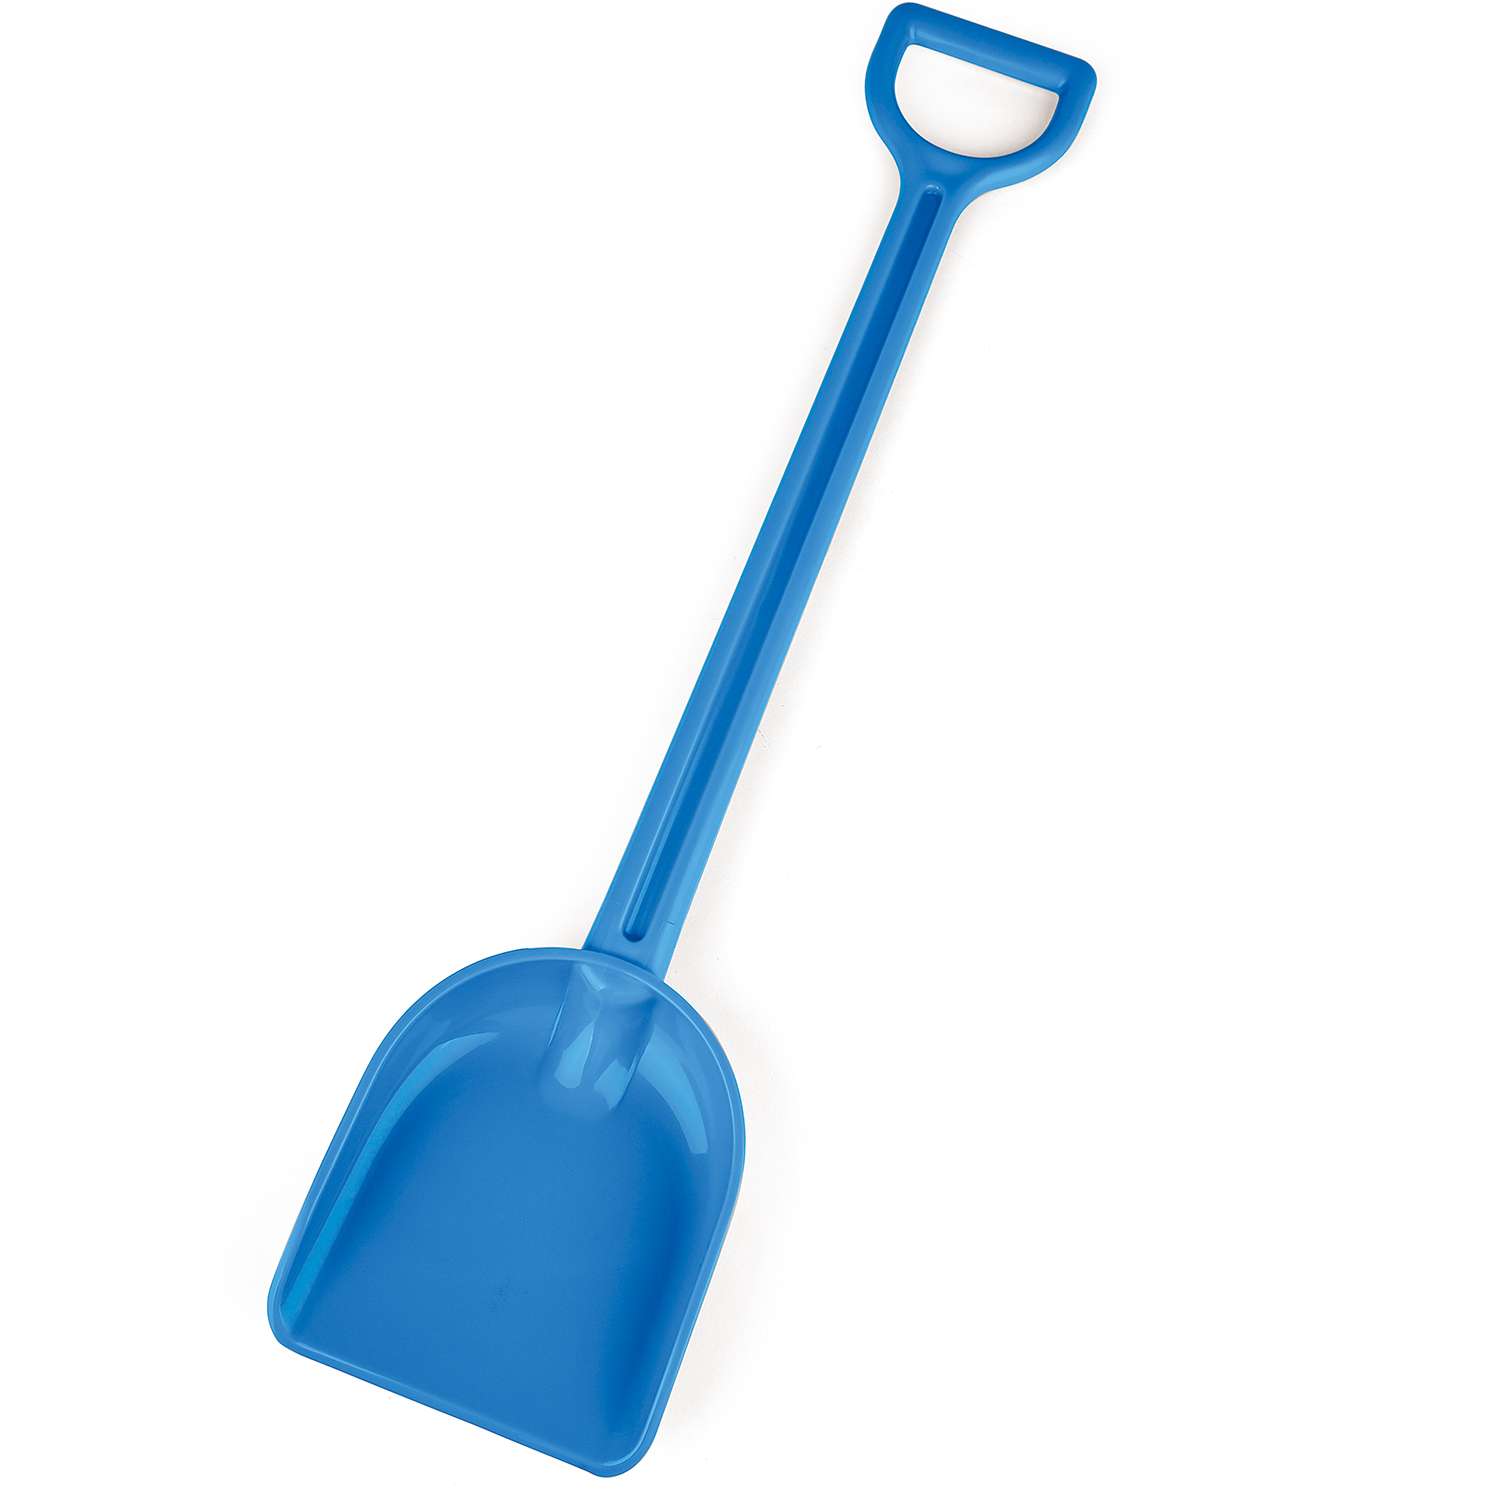 Игрушка для игры на пляже HAPE детская синяя лопата для песка 55 см. - фото 2